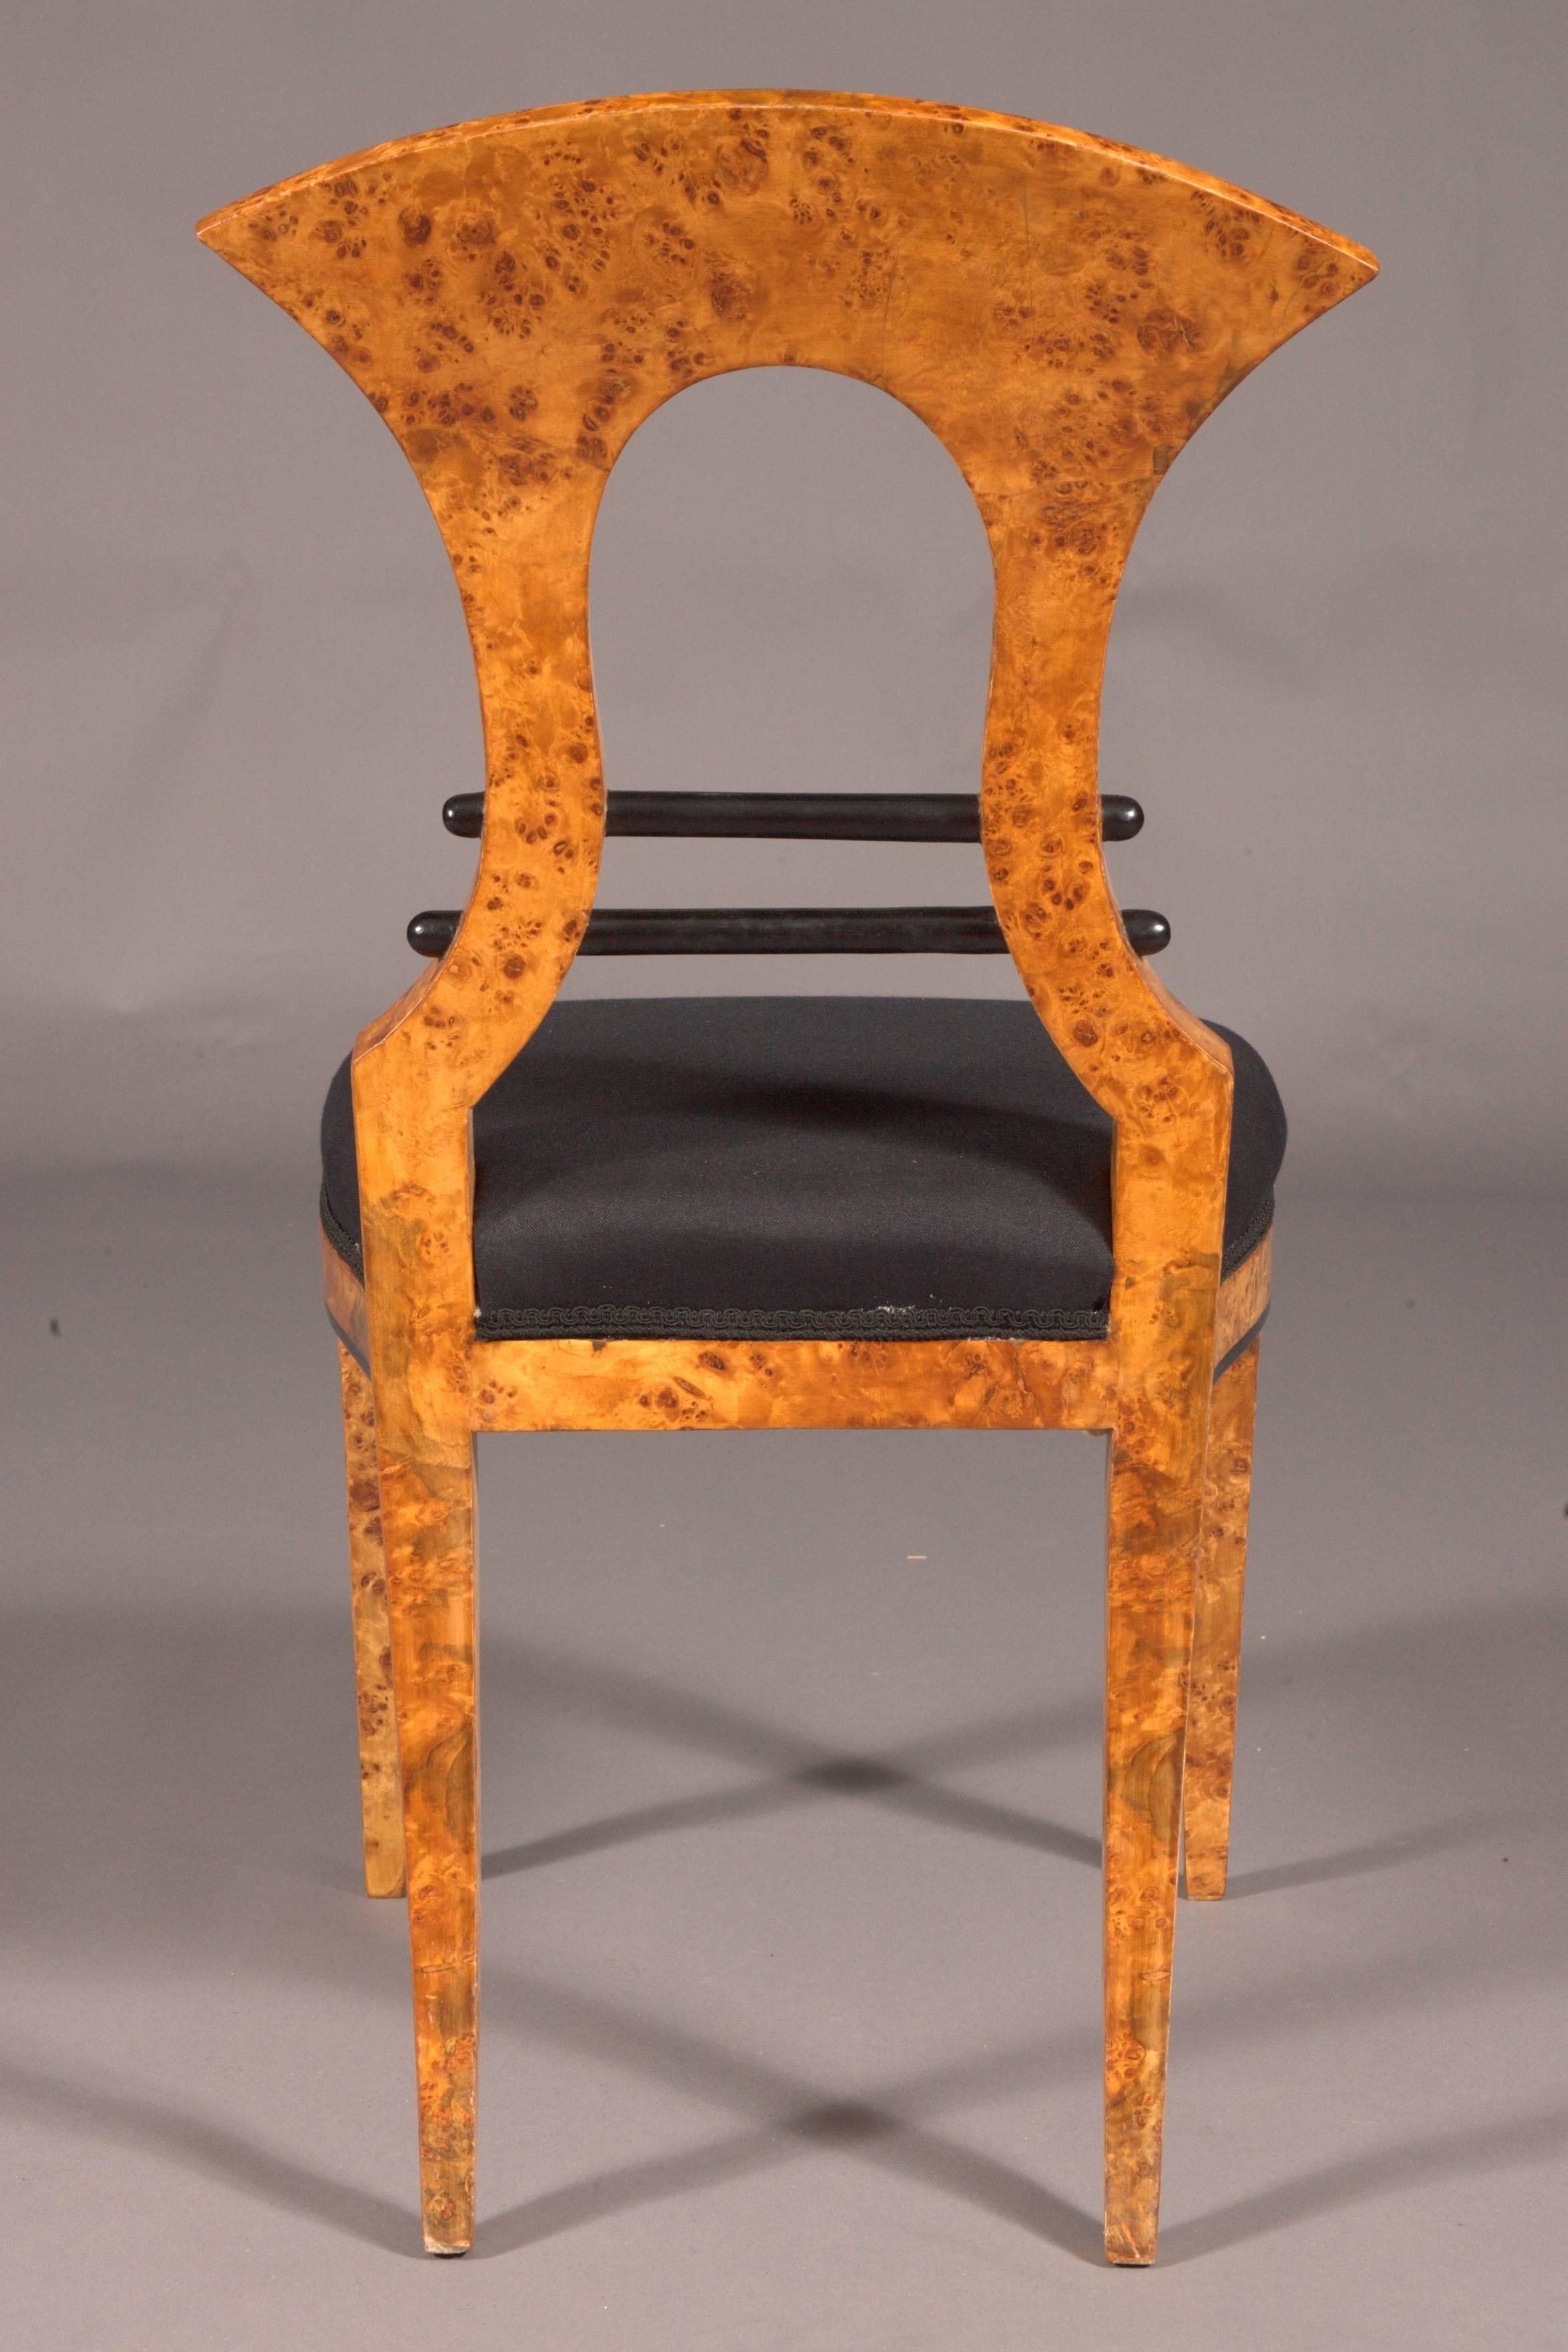 Birdseye Maple Vienna Biedermeier Chair after antique Josef Danhauser birdie maple veneer